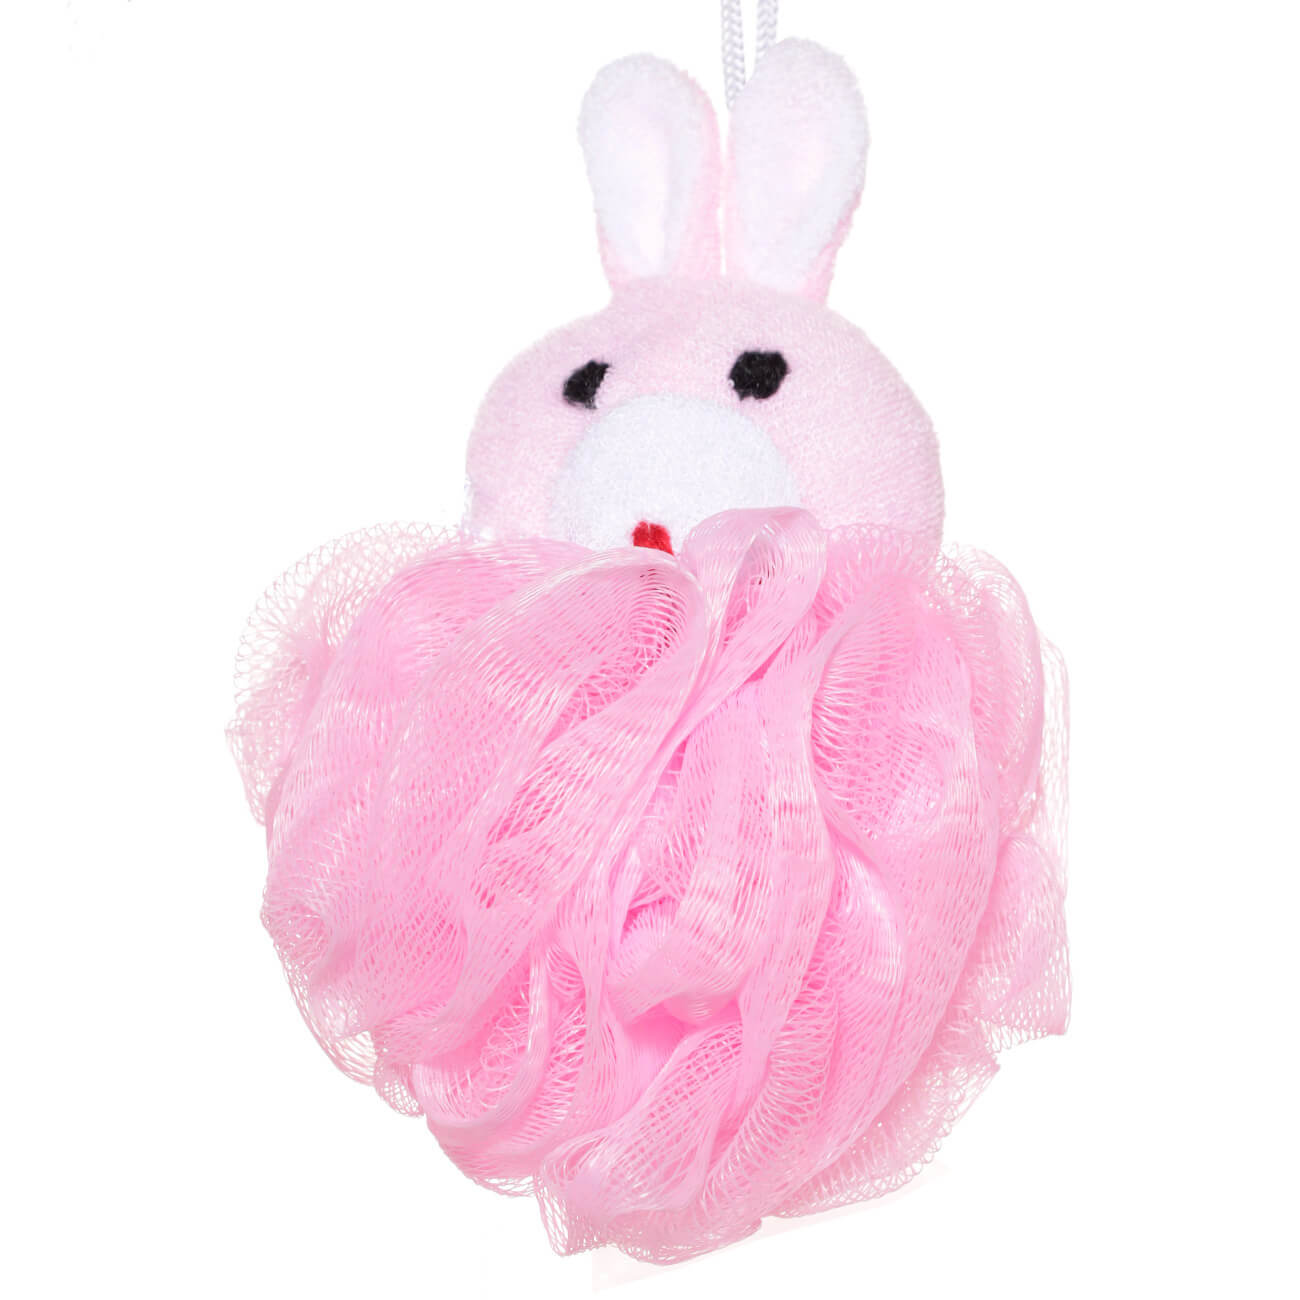 Мочалка для мытья тела, 12 см, детская, полиэтилен/полиэстер, розовая, Заяц, Rabbit мочалка для мытья тела 12 см детская полиэтилен полиэстер розовая заяц rabbit